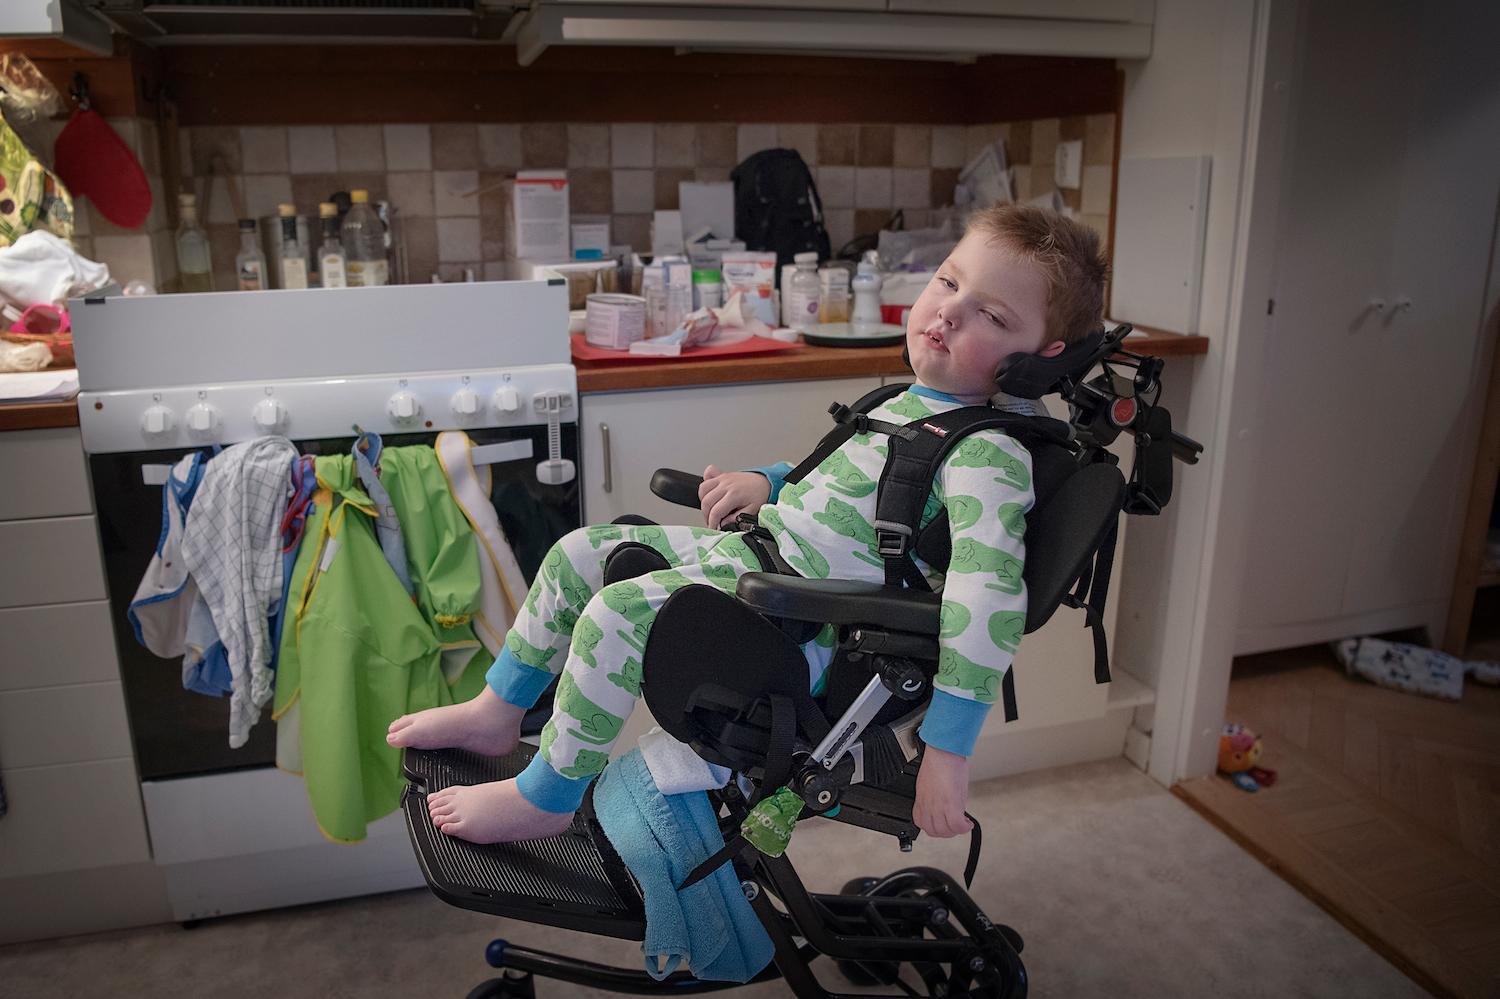 Olof sitter fastpänd med stöd för nacken i sin  rullstol. Mycket av skötseln av Olof är medicinsk vård dygnet runt. "Inget av det vi gör liknar normalt föräldraansvar", säger Karolina Hermansson.